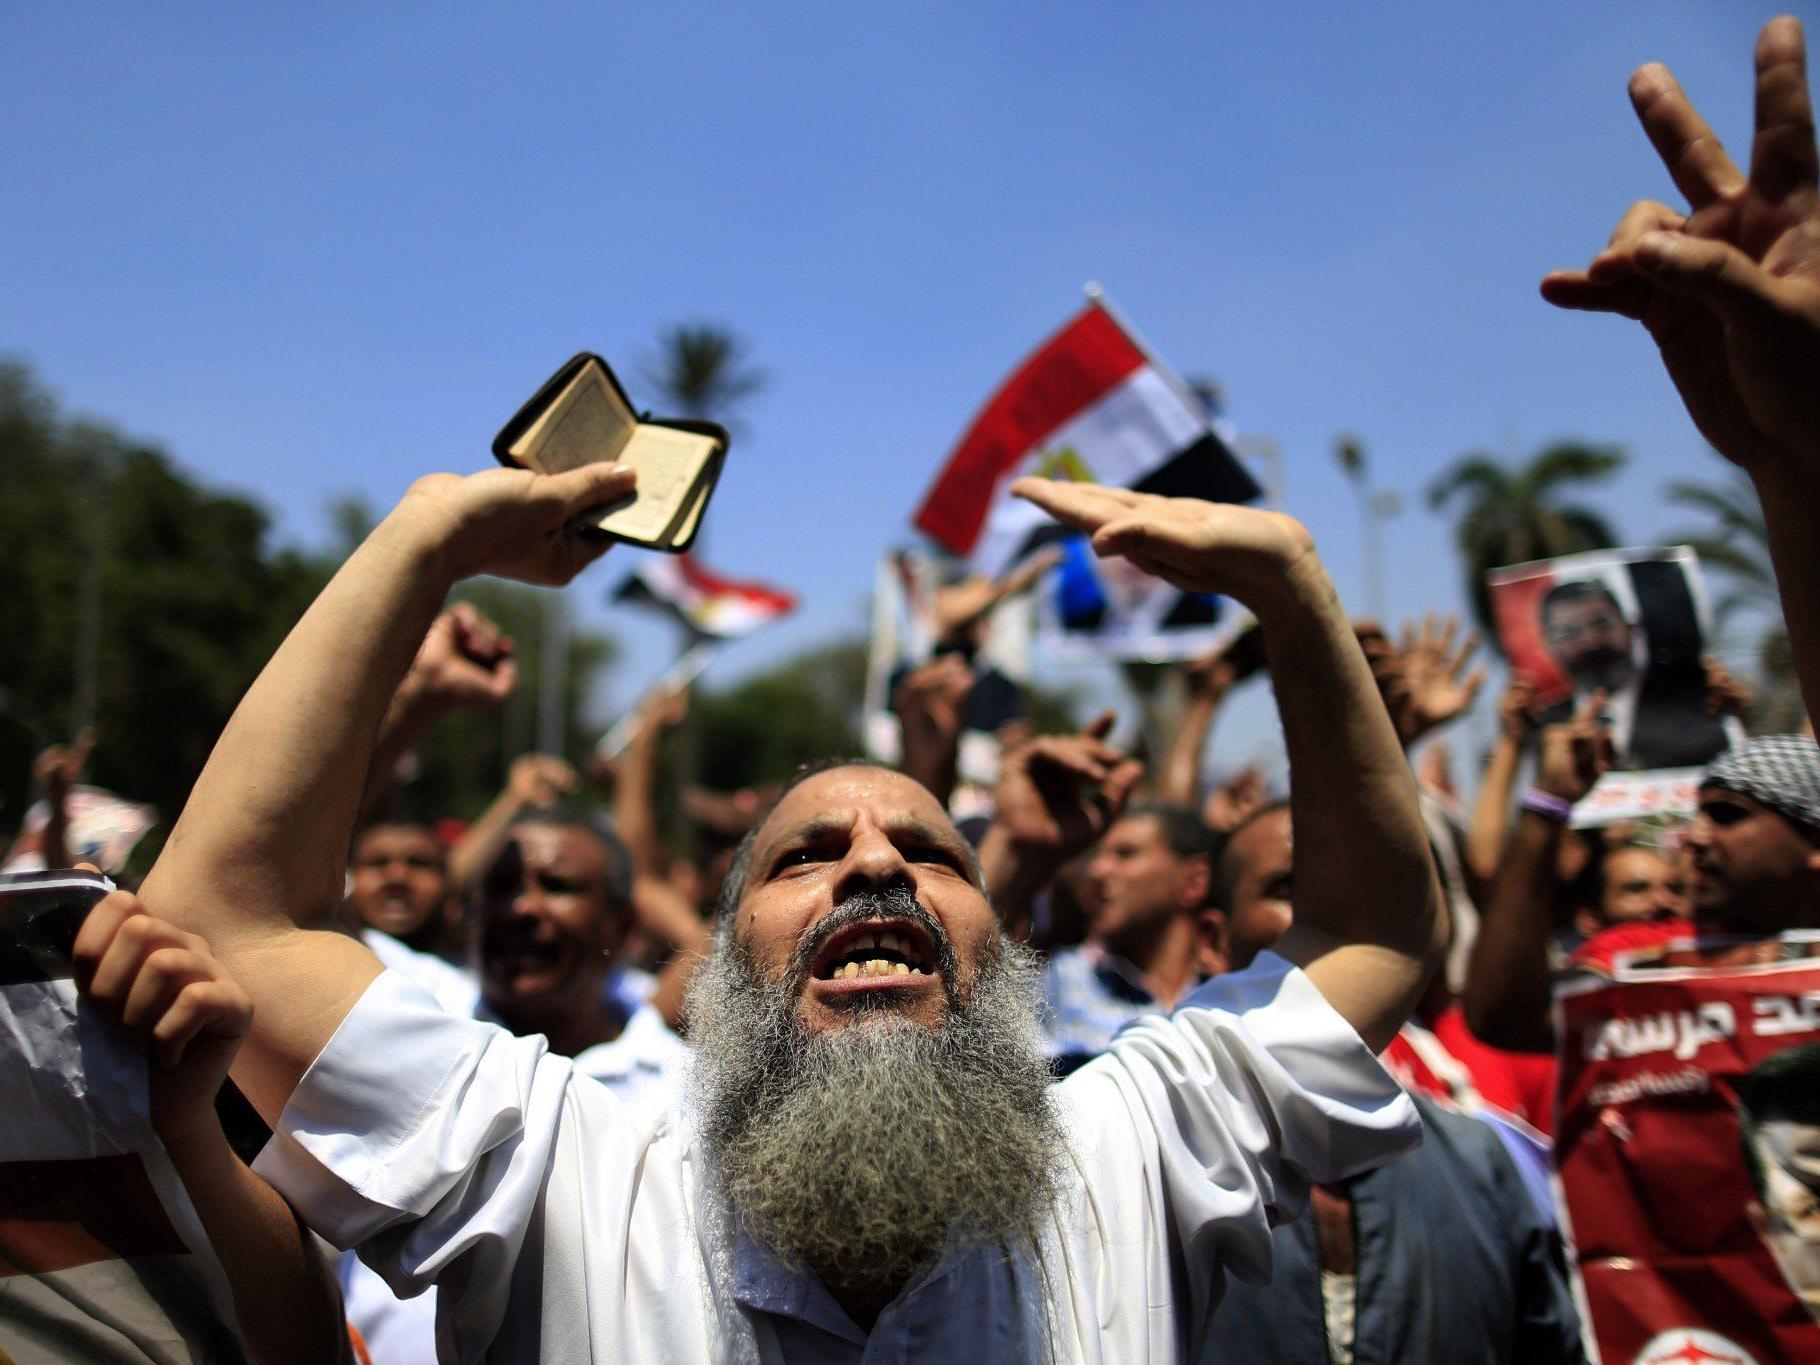 Opposition ruft zu Demonstrationen auf - AU suspendiert Mitliedschaft Ägyptens.